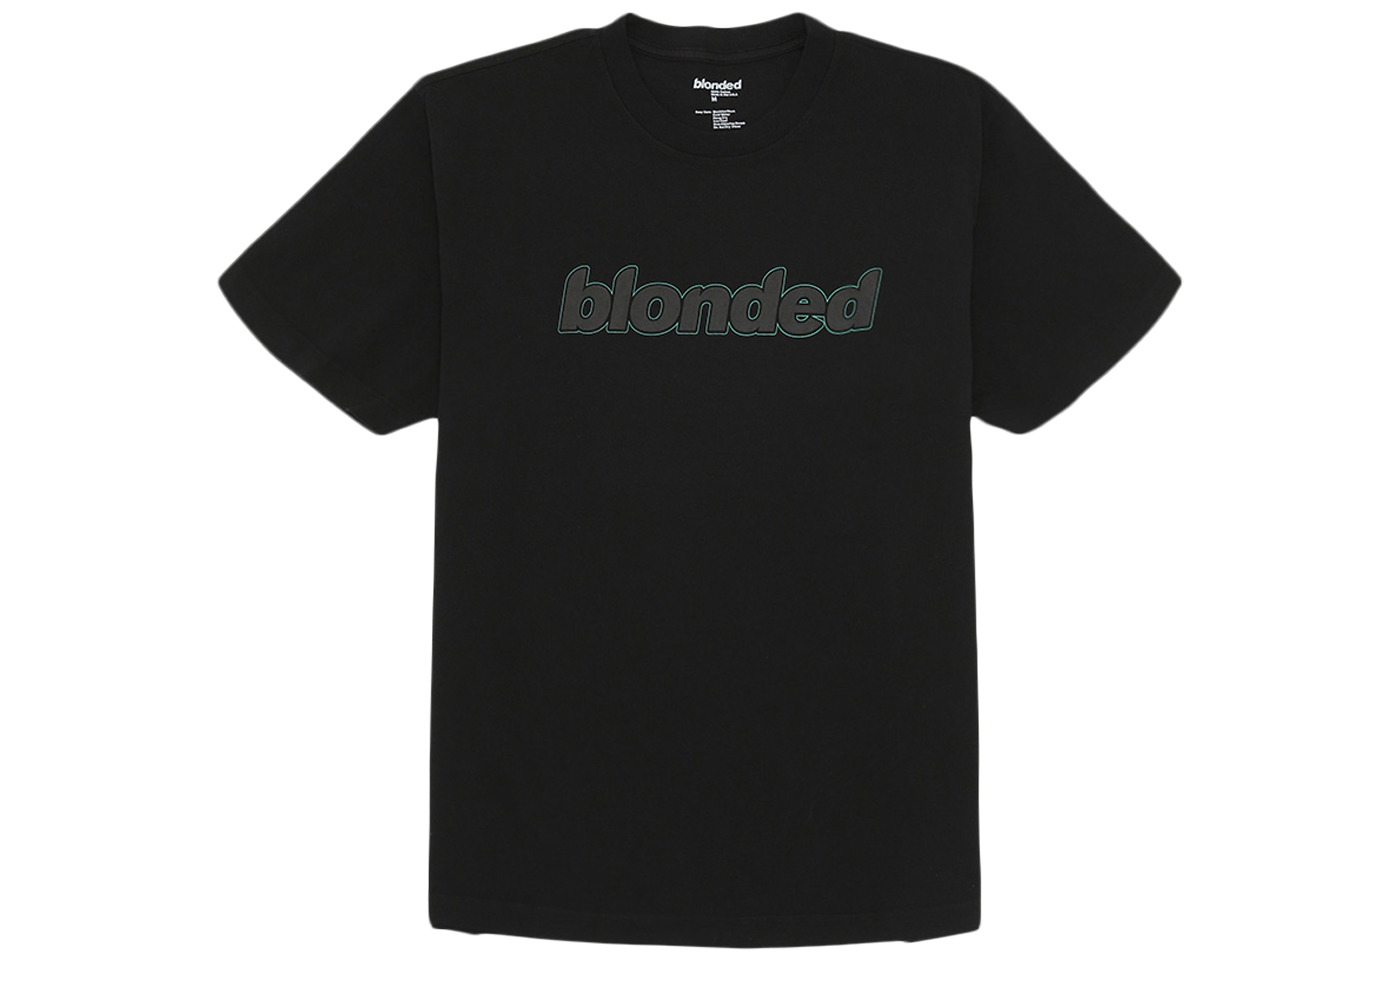 Frank Ocean Blonded Radio New Classic Logo T-shirt Black/Riddler 